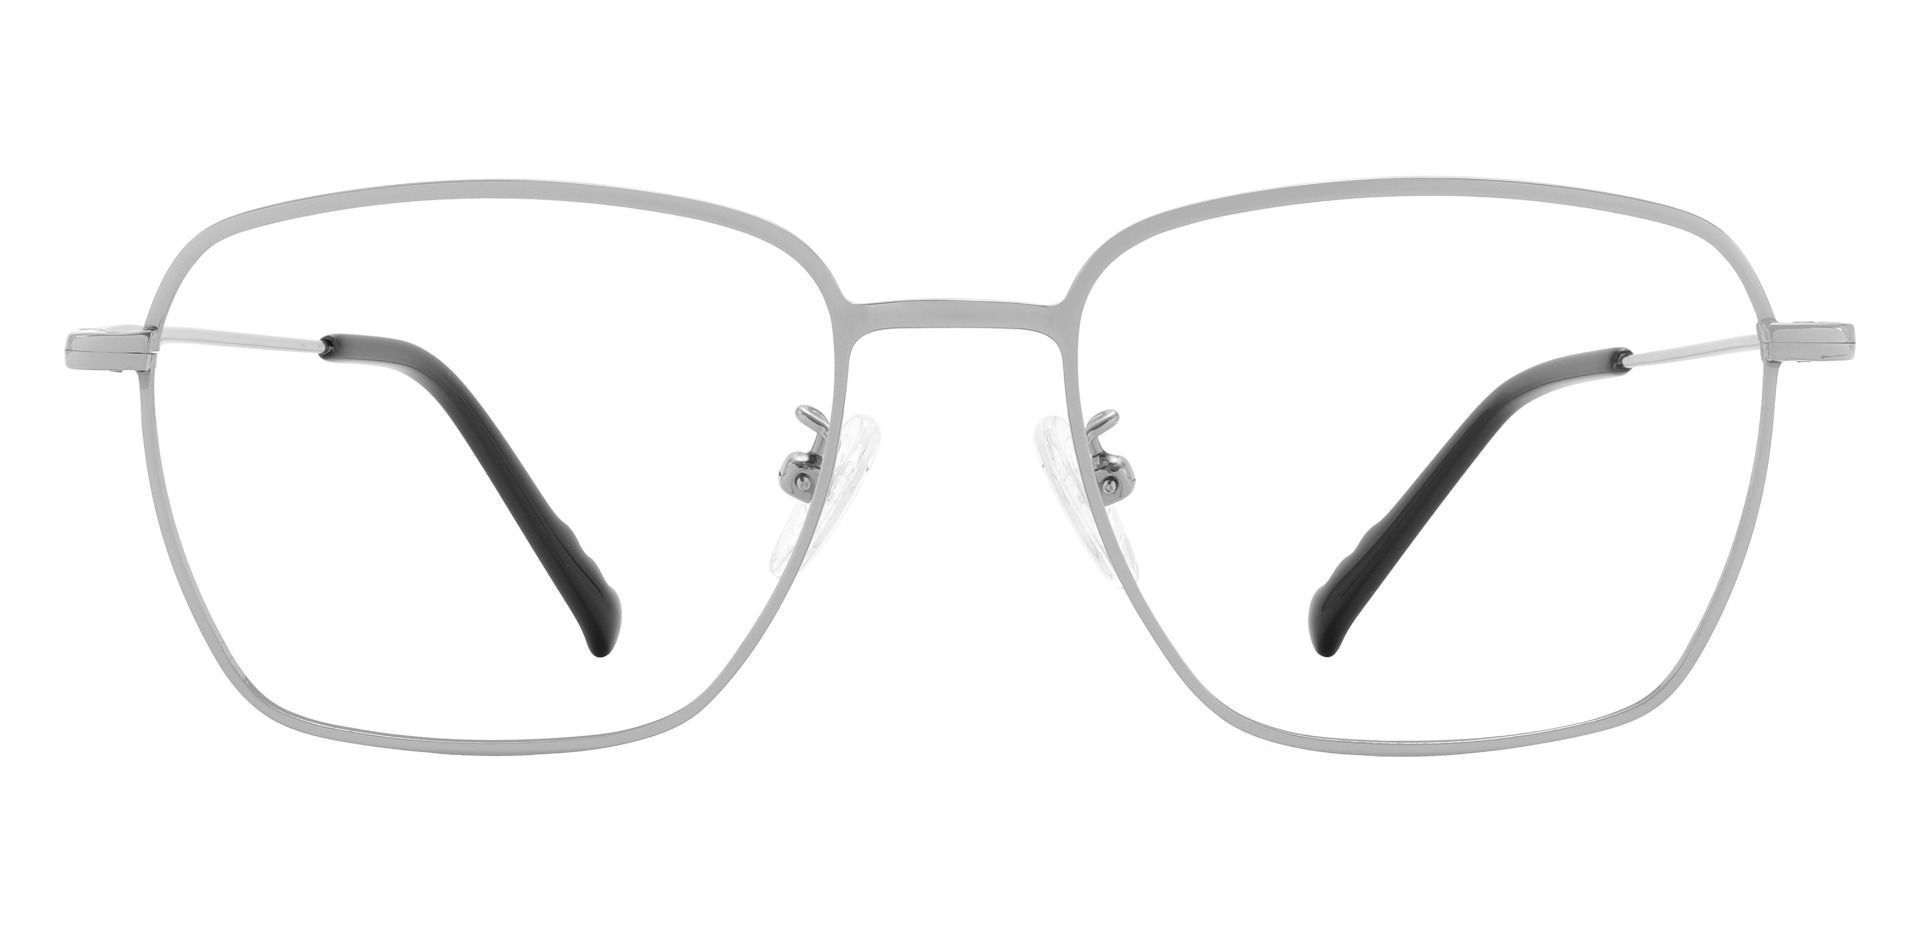 Emilio Geometric Prescription Glasses - Silver